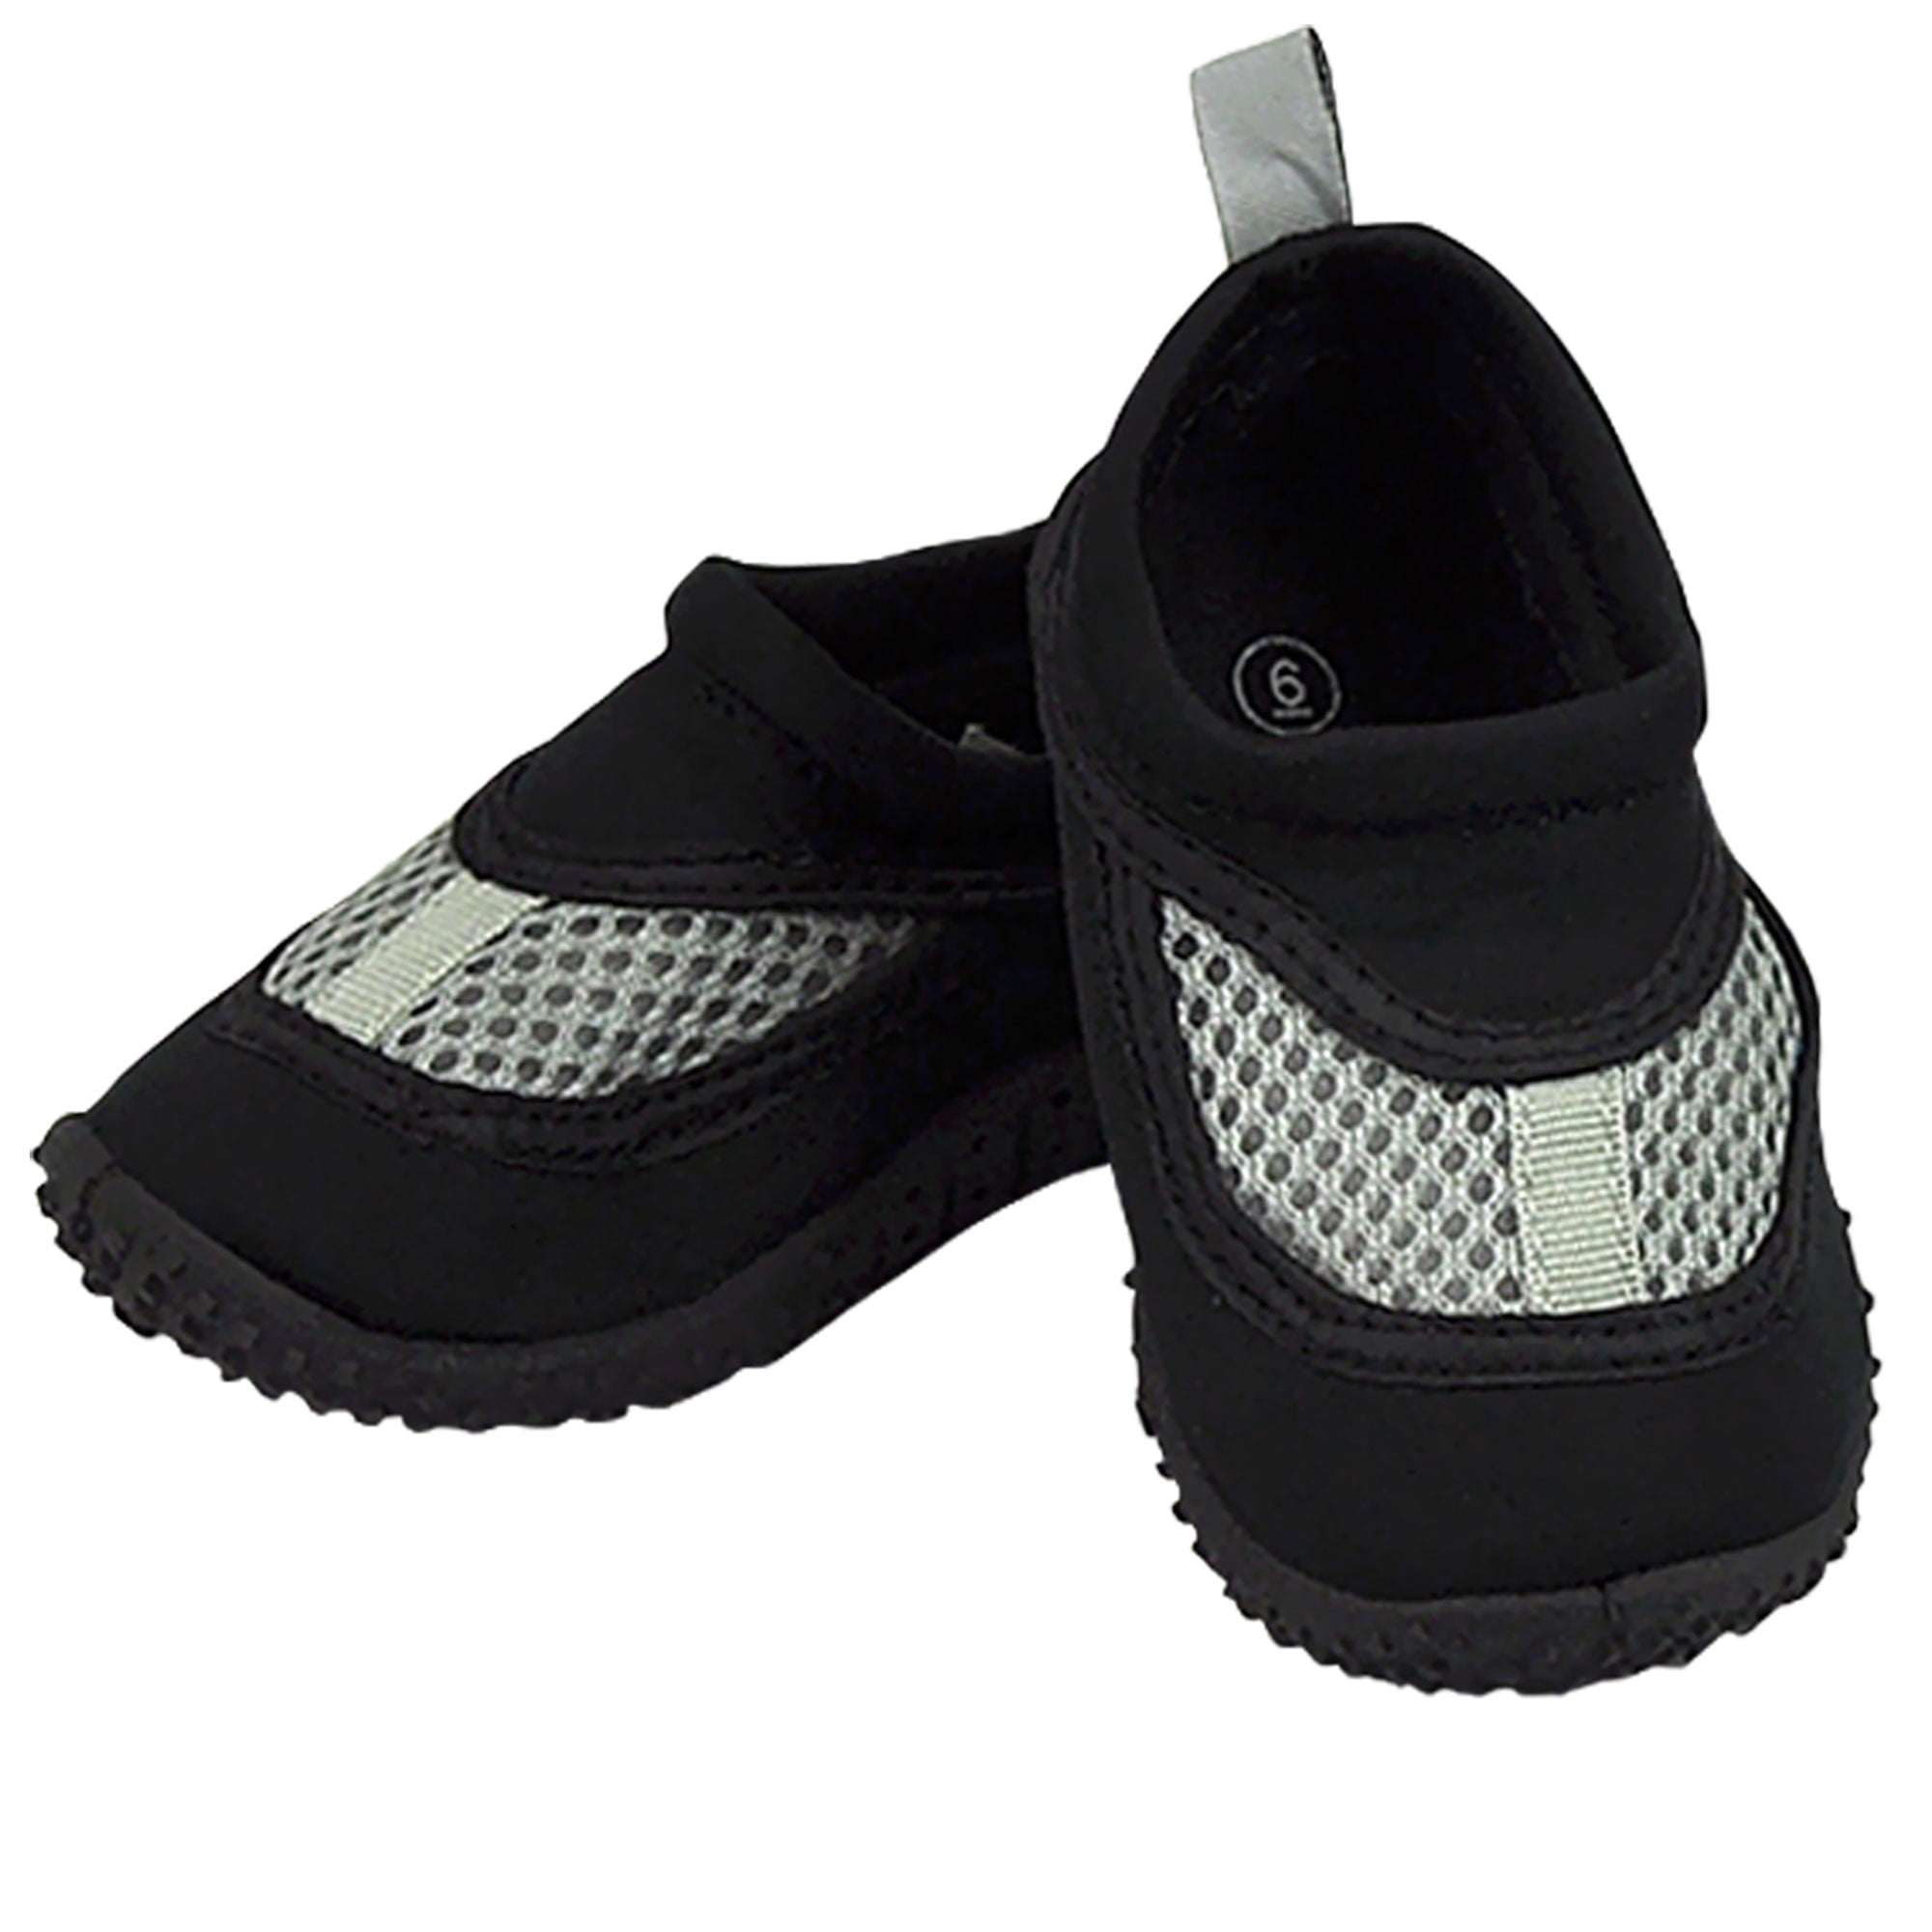 infant size 5 black shoes